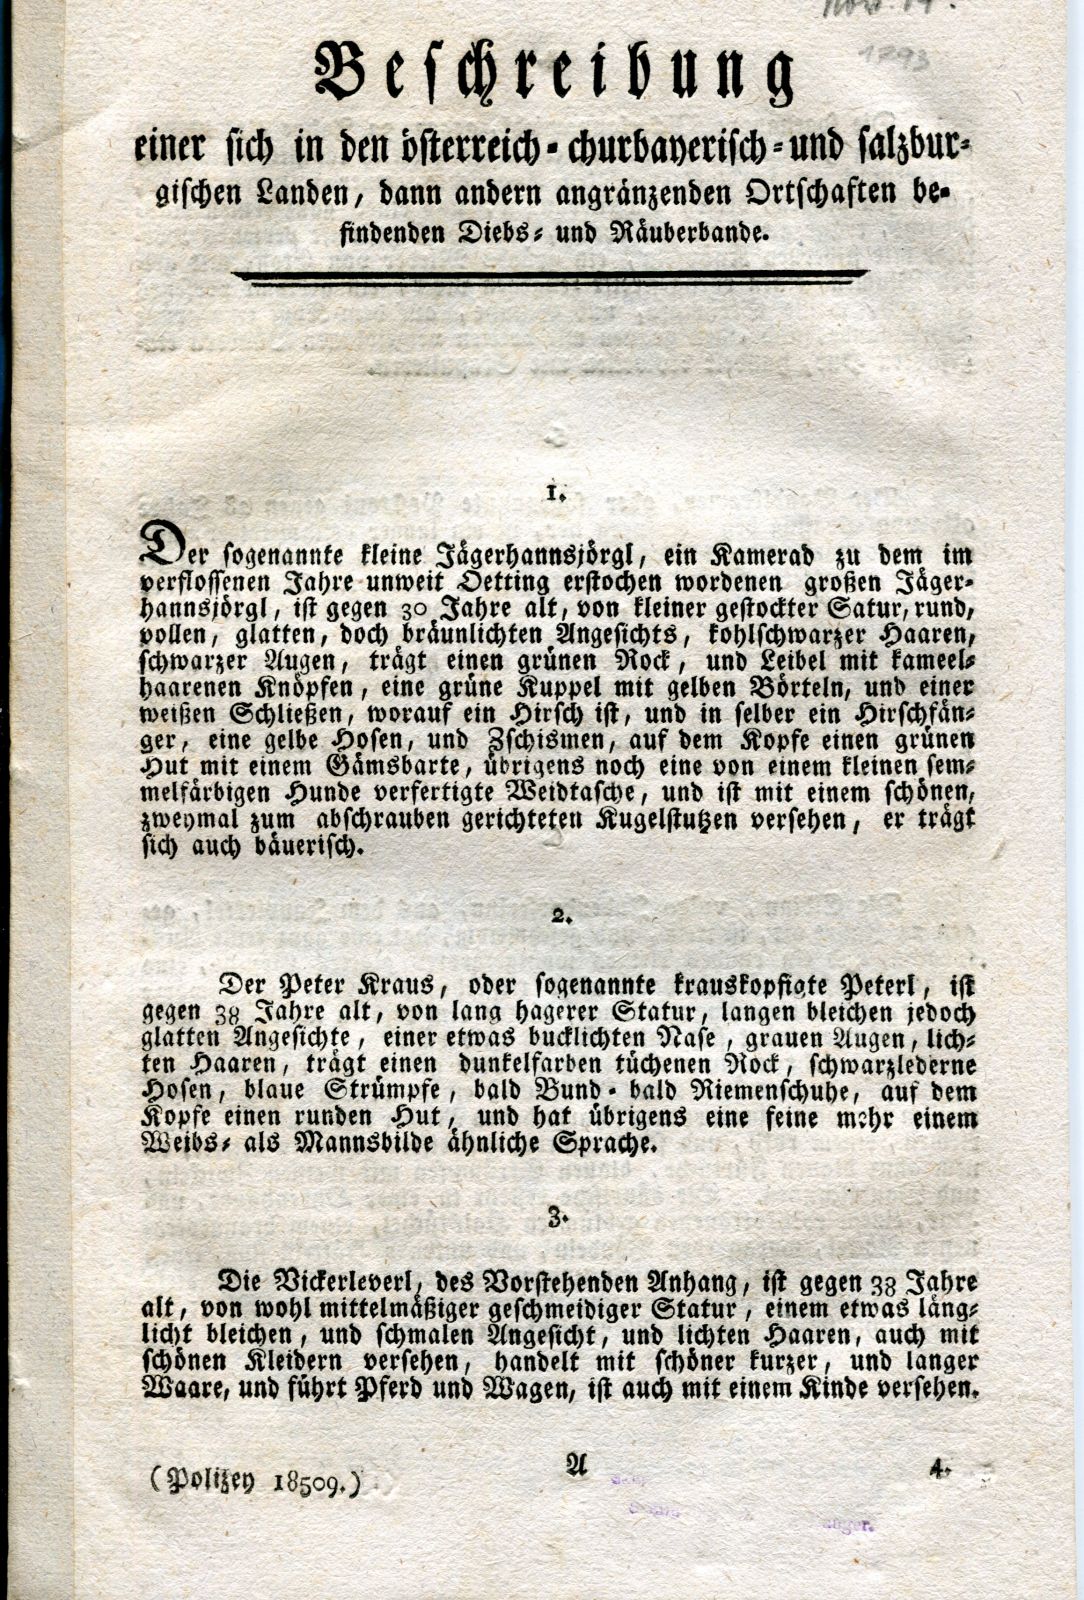 Steckbriefe 1793